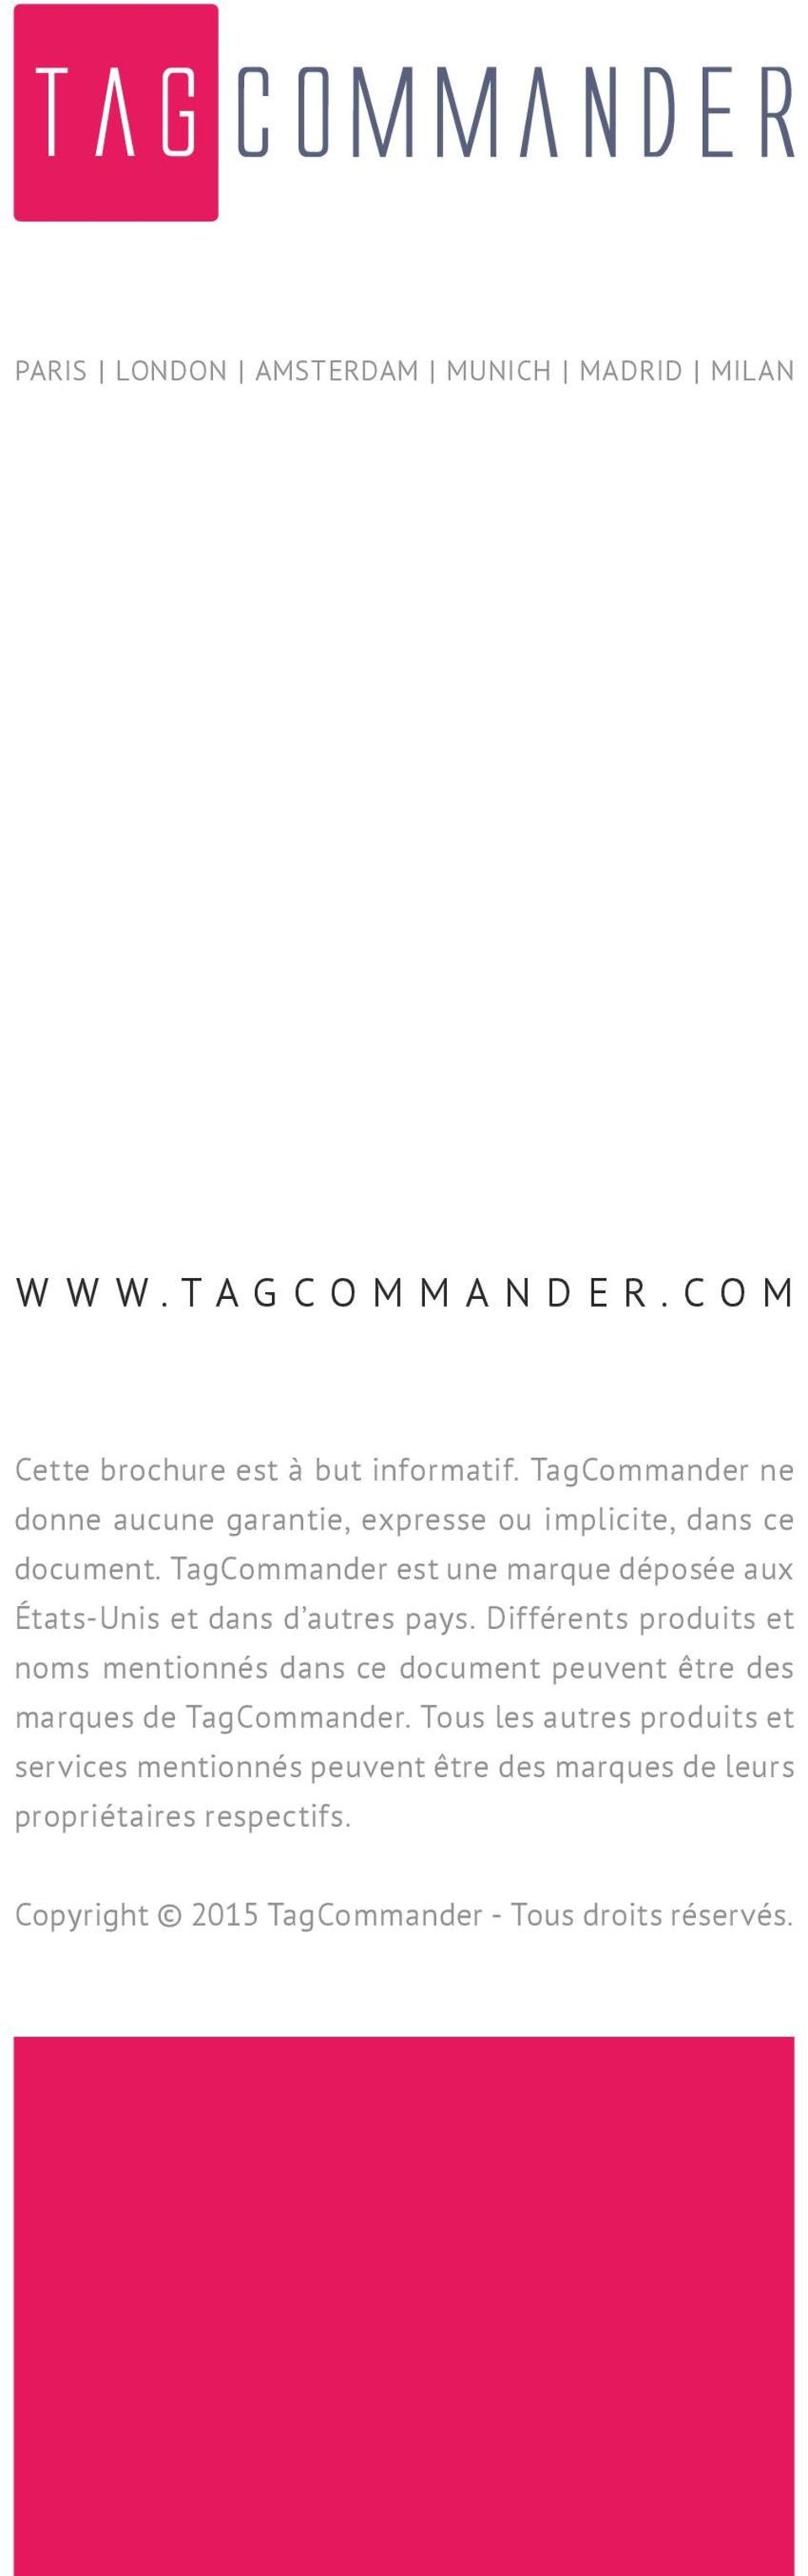 TagCommander est une marque déposée aux États-Unis et dans d autres pays.